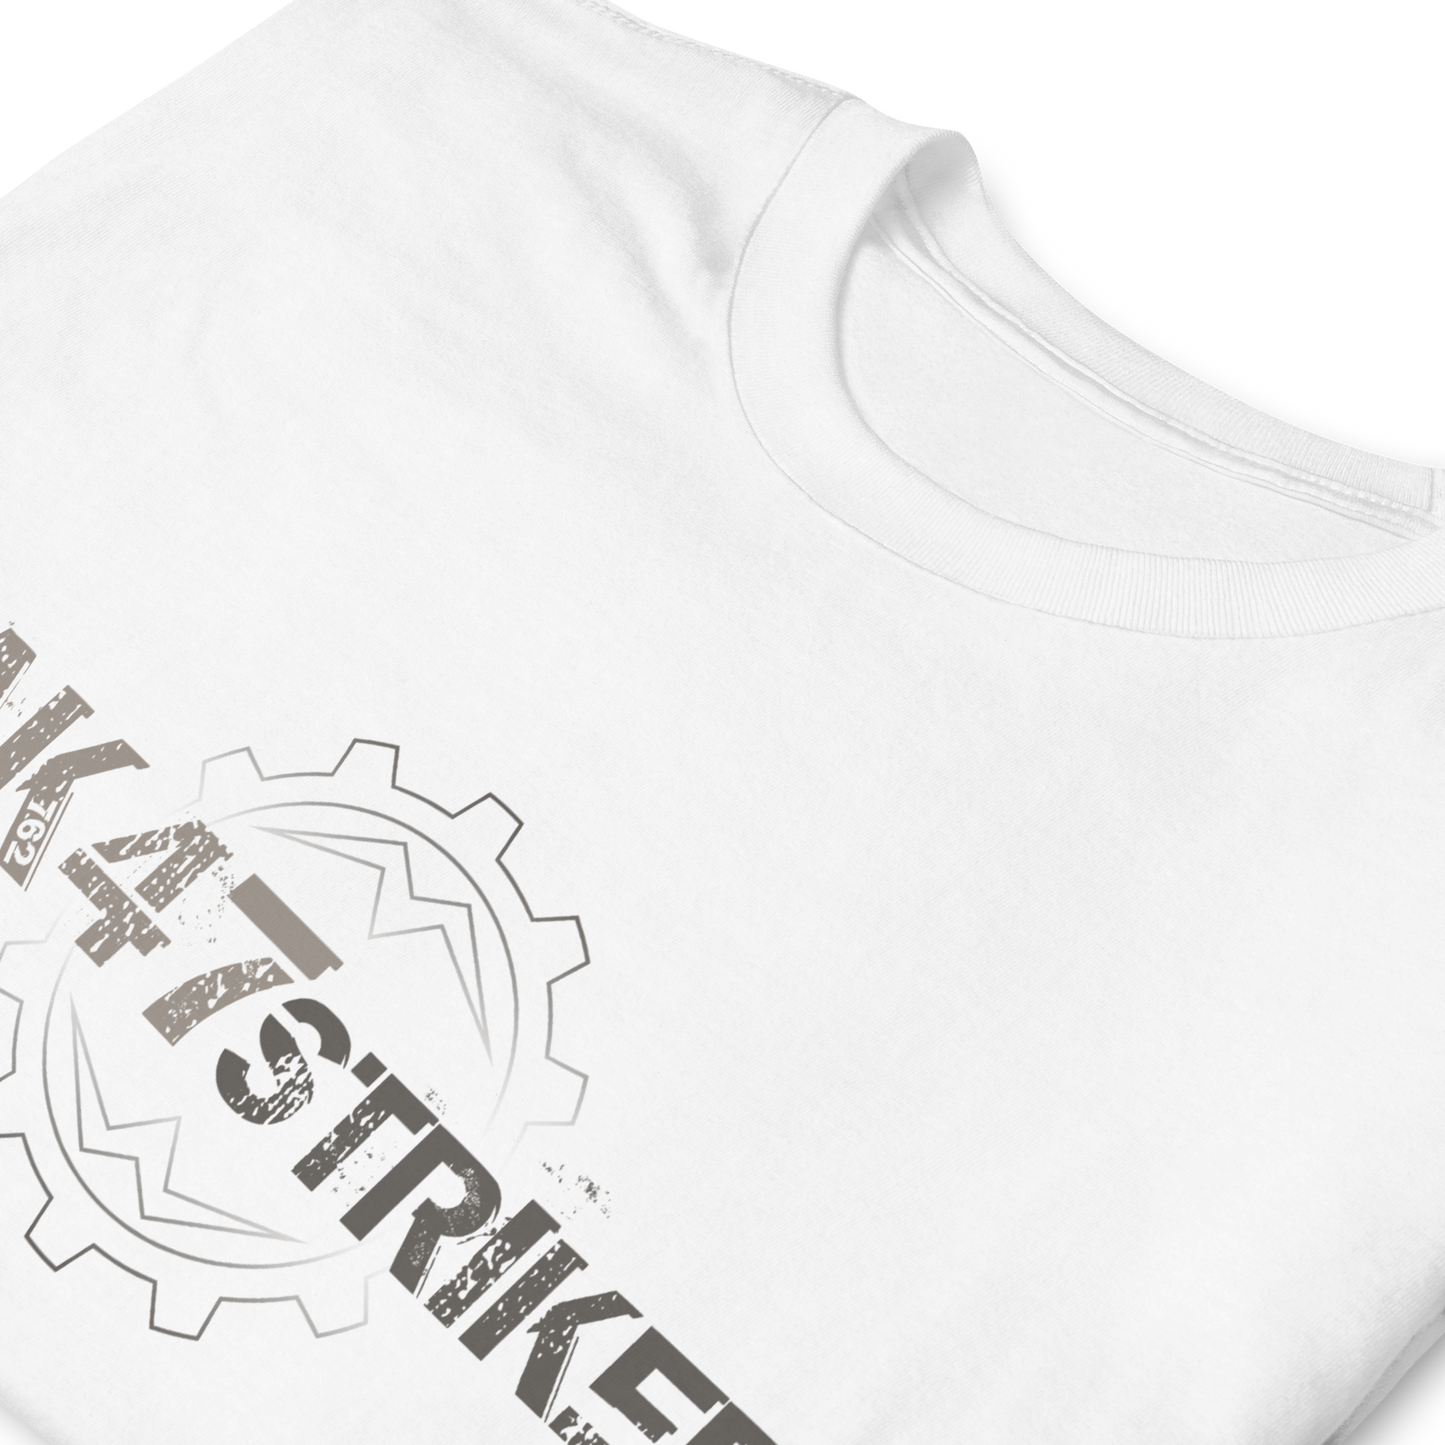 Camiseta de algodón MMA para hombre Ko Machine Striker Camo Grey